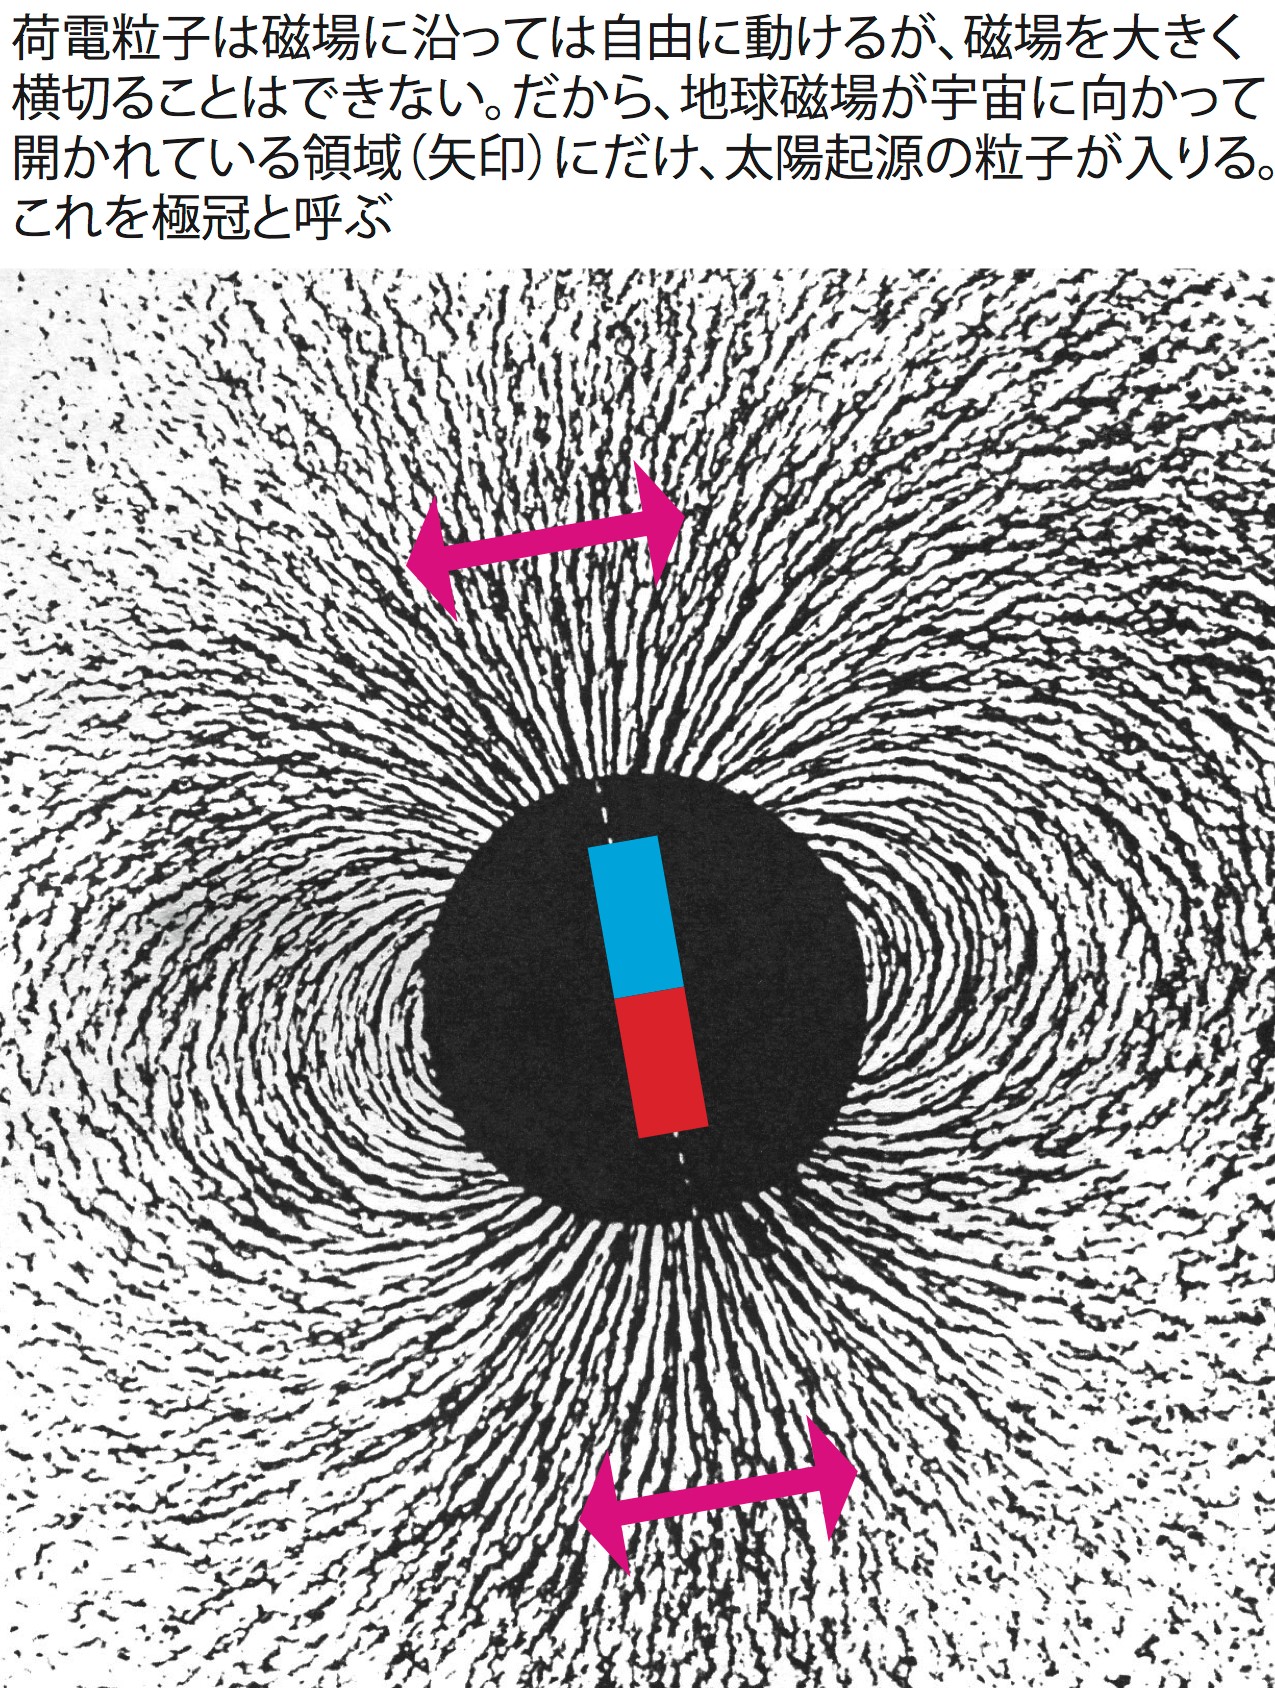 写真・図版 : 地球磁場（砂鉄に見られる磁場の向きのパターン）において、宇宙線の入りやすい領域（S. チャップマン & J. バーテルス『地磁気』、1940年に著者が加筆）